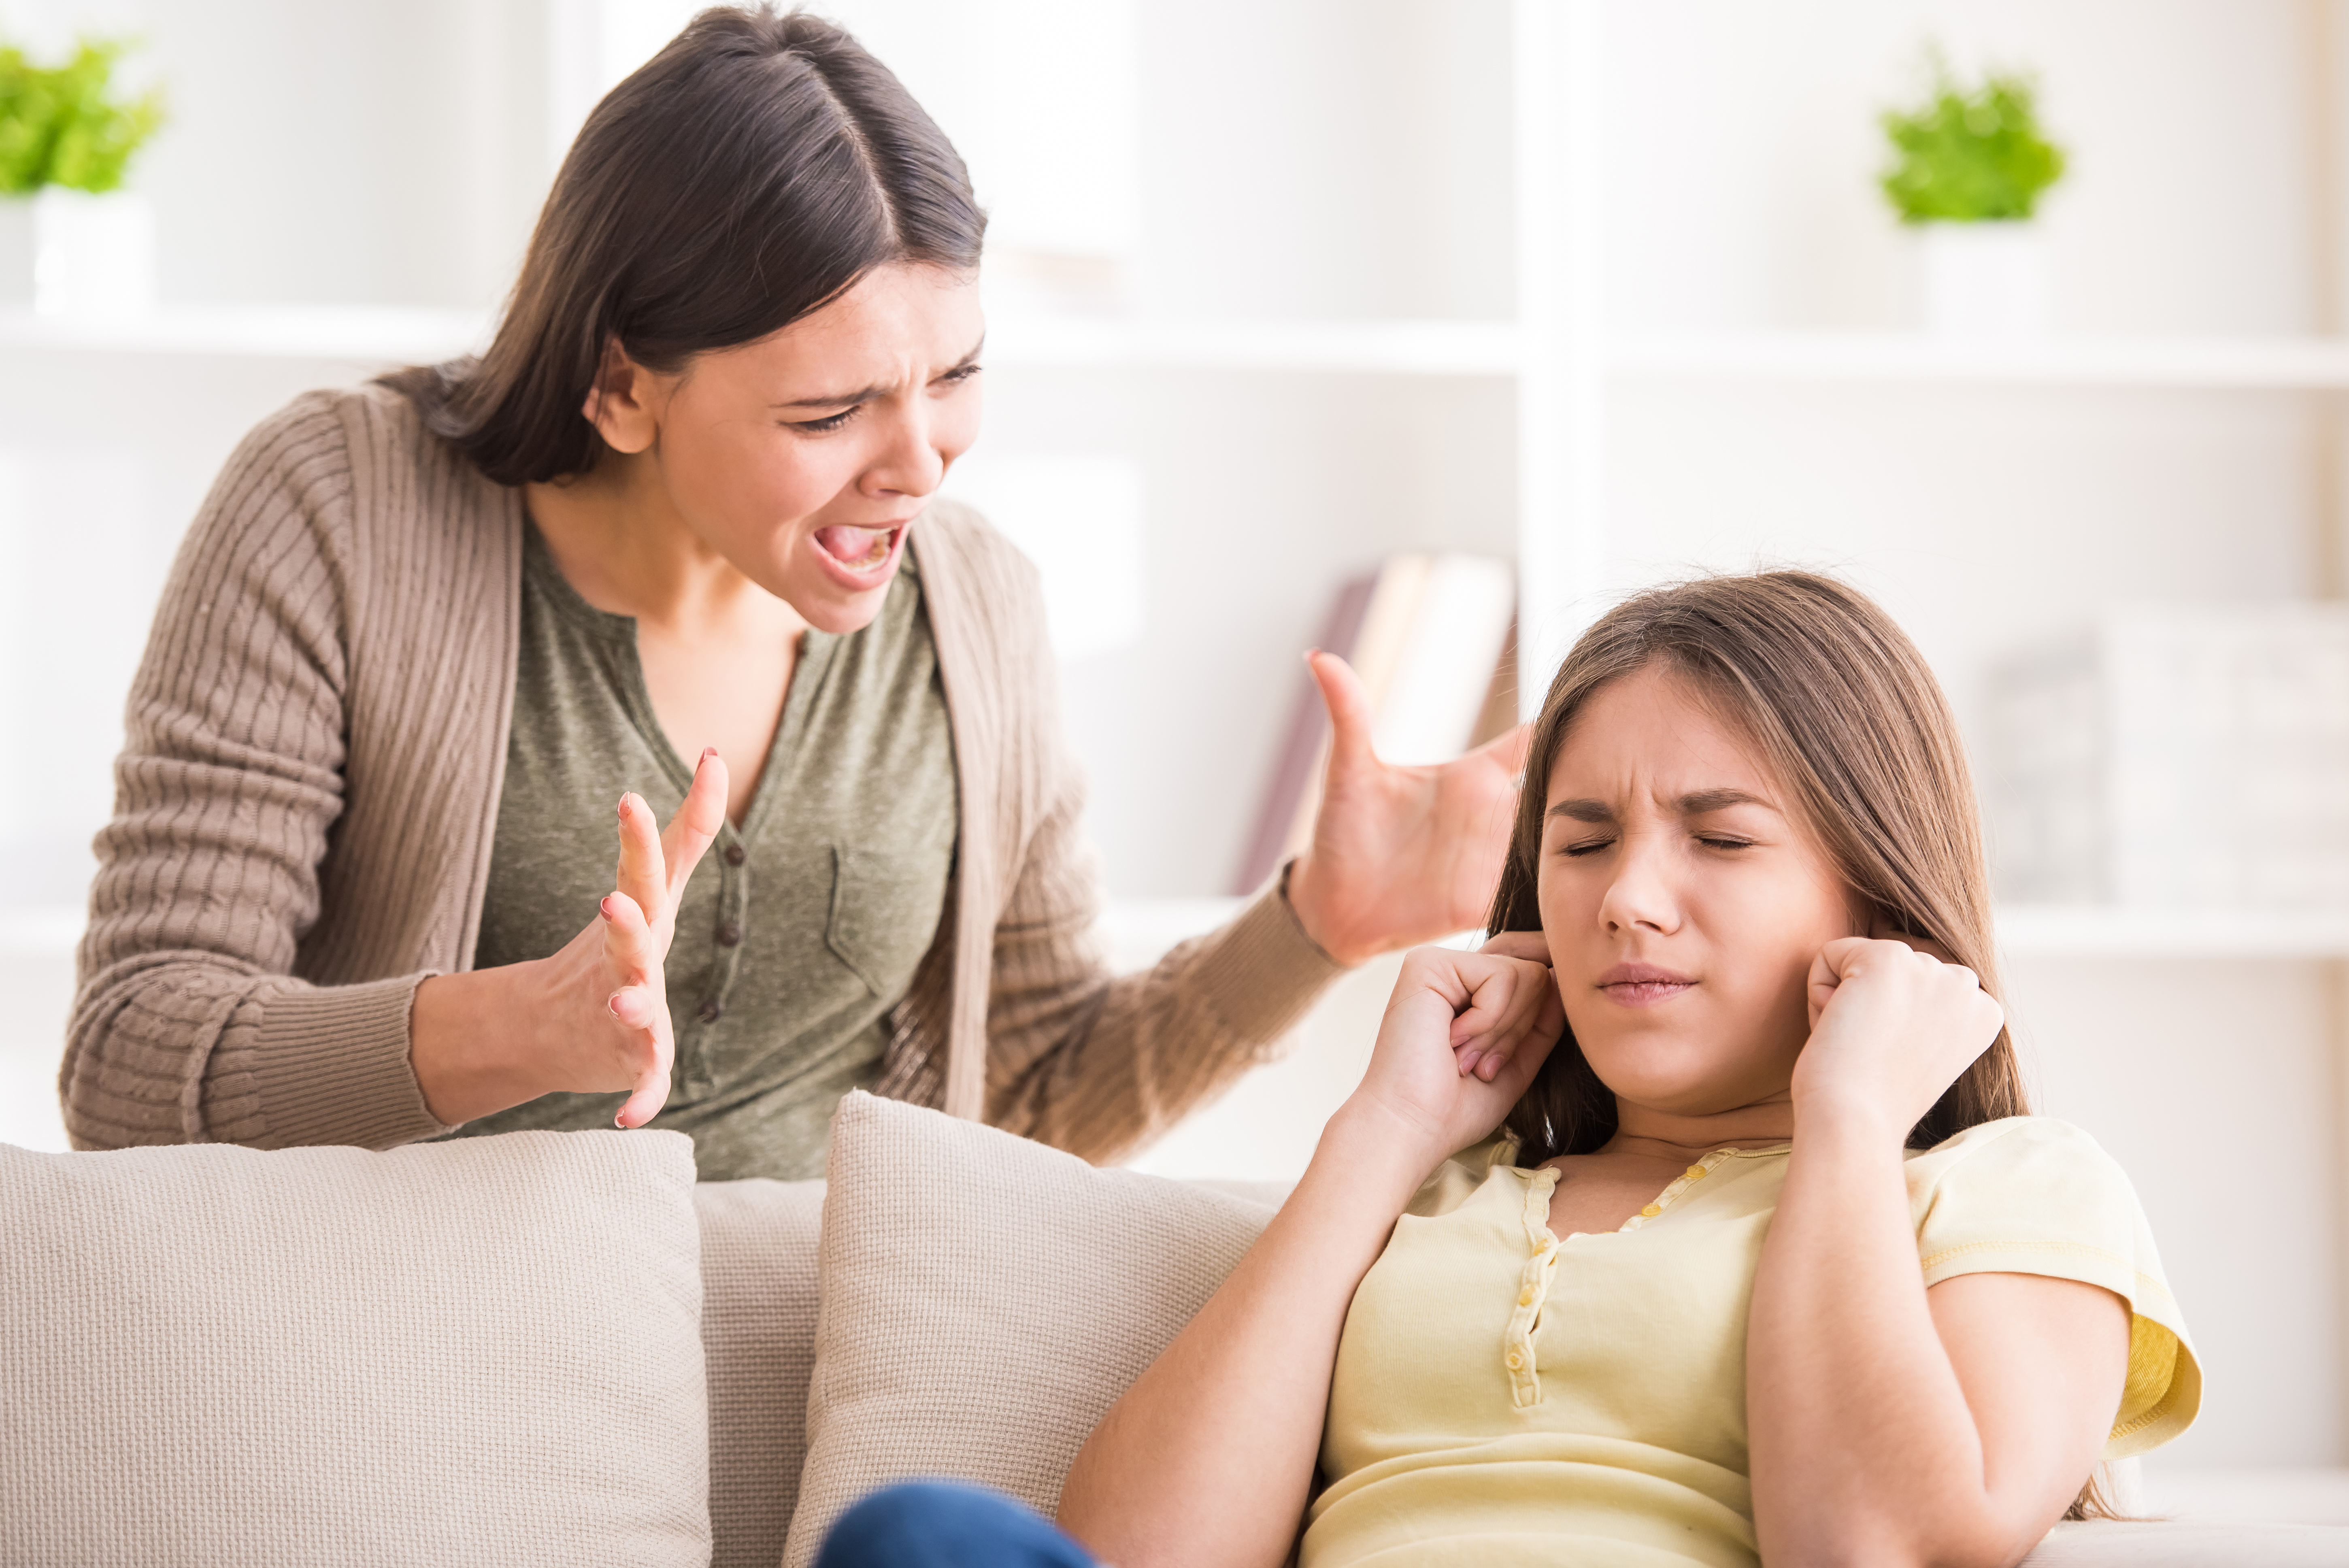 Une jeune femme crie sur une adolescente | Source : Shutterstock